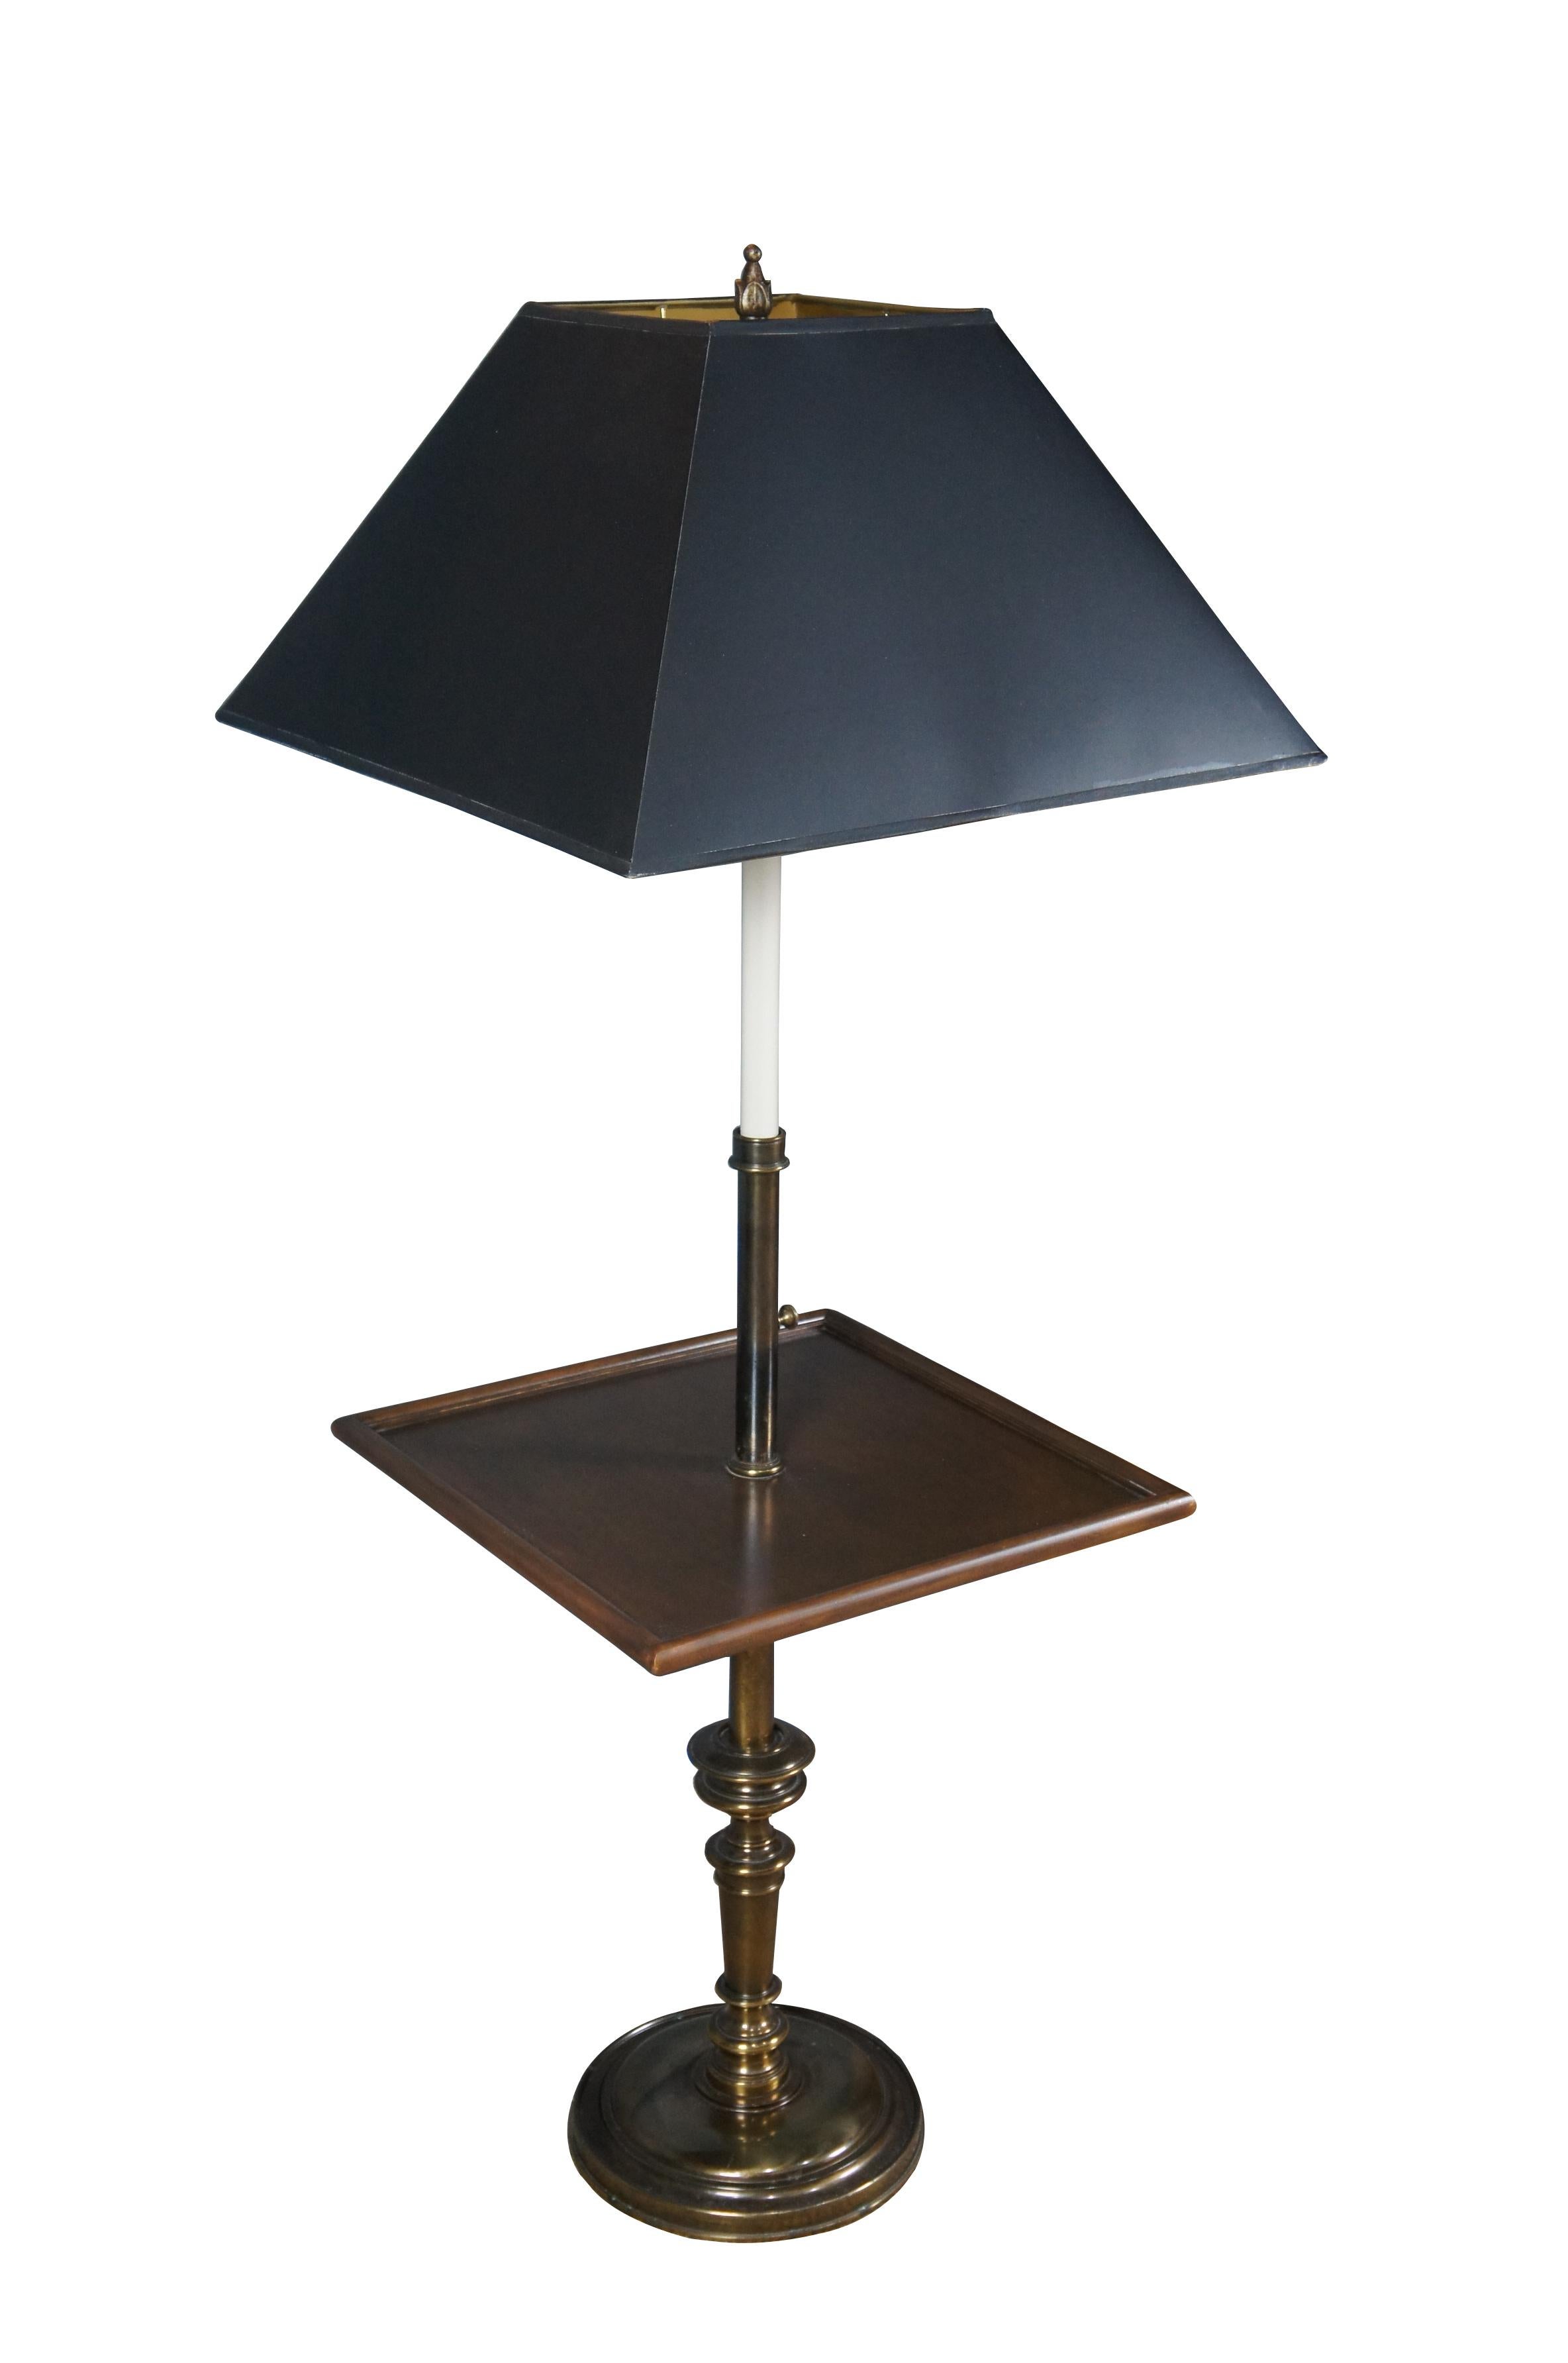 Lampadaire Stiffel du milieu du siècle en laiton avec table d'appoint en bois carré et chandelier.

Dimensions :
17